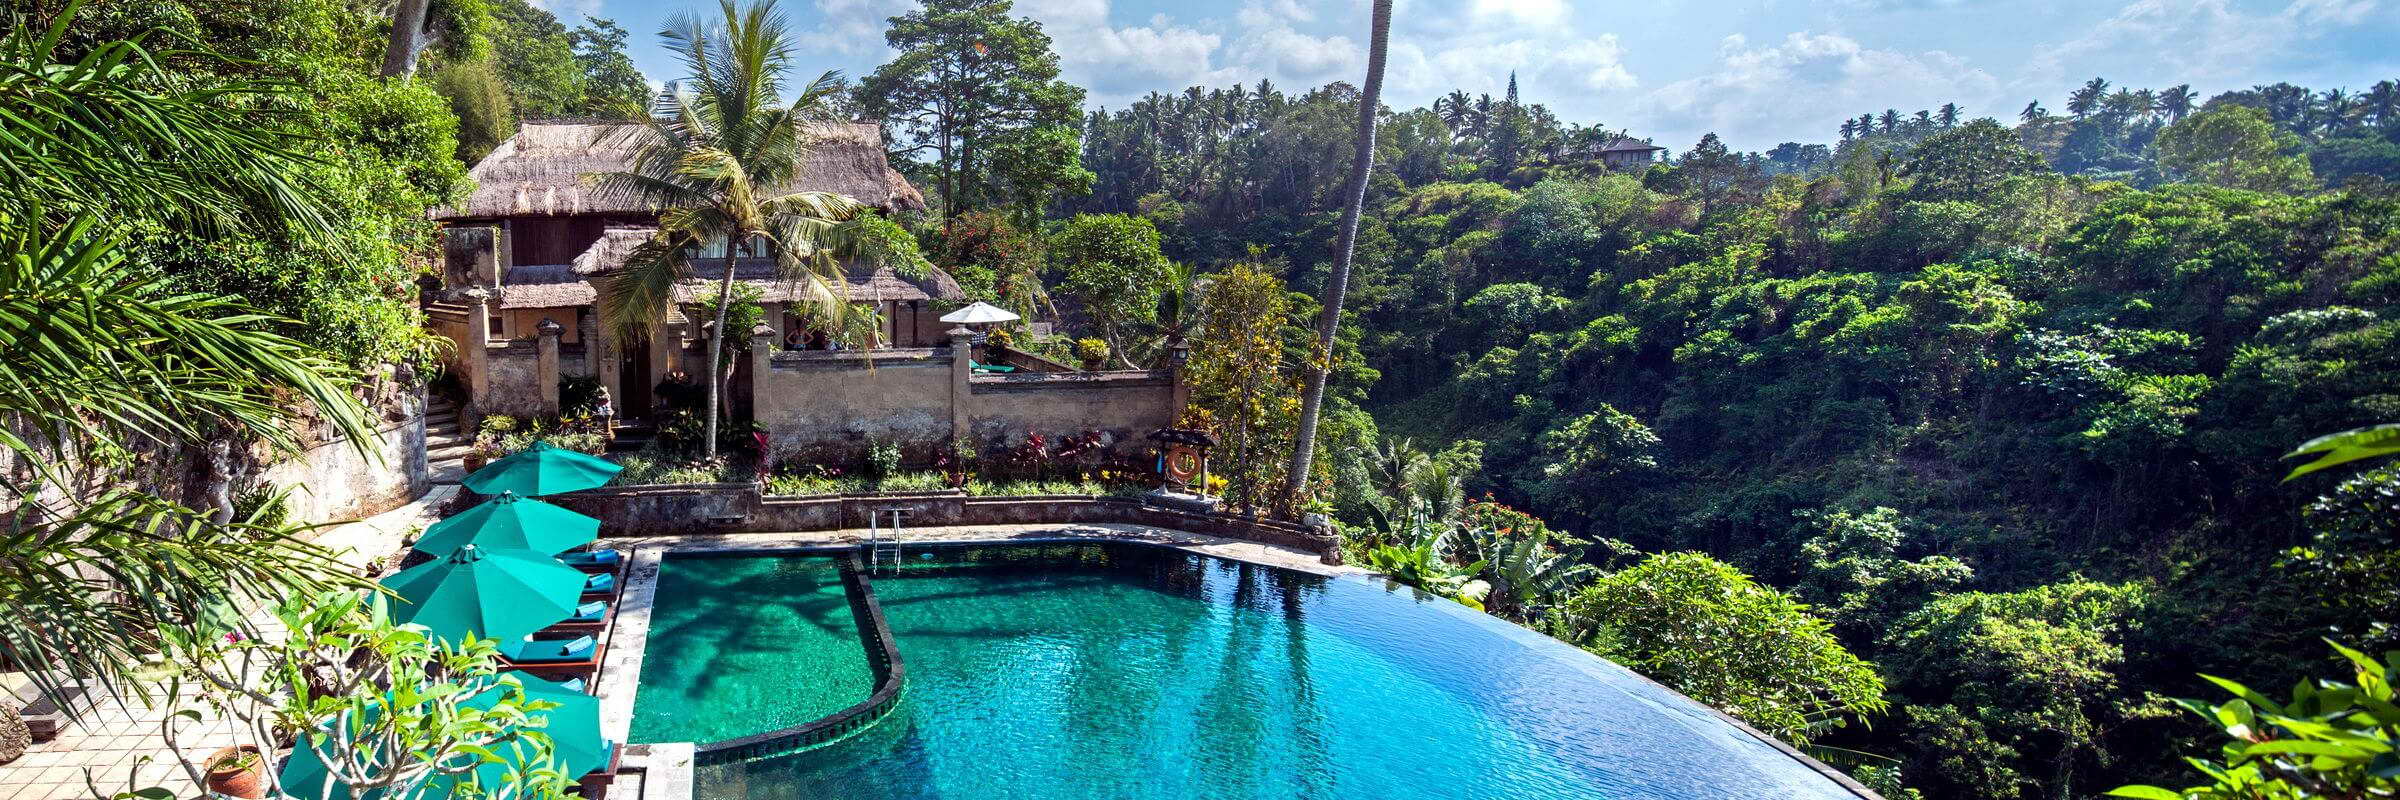 Der große Panorama-Swimmingpool mit Sonnenterrasse und Poolbar im Pita Maha Resort & Spa lädt zum Schwimmen und entspanntem Sonnenbaden ein.